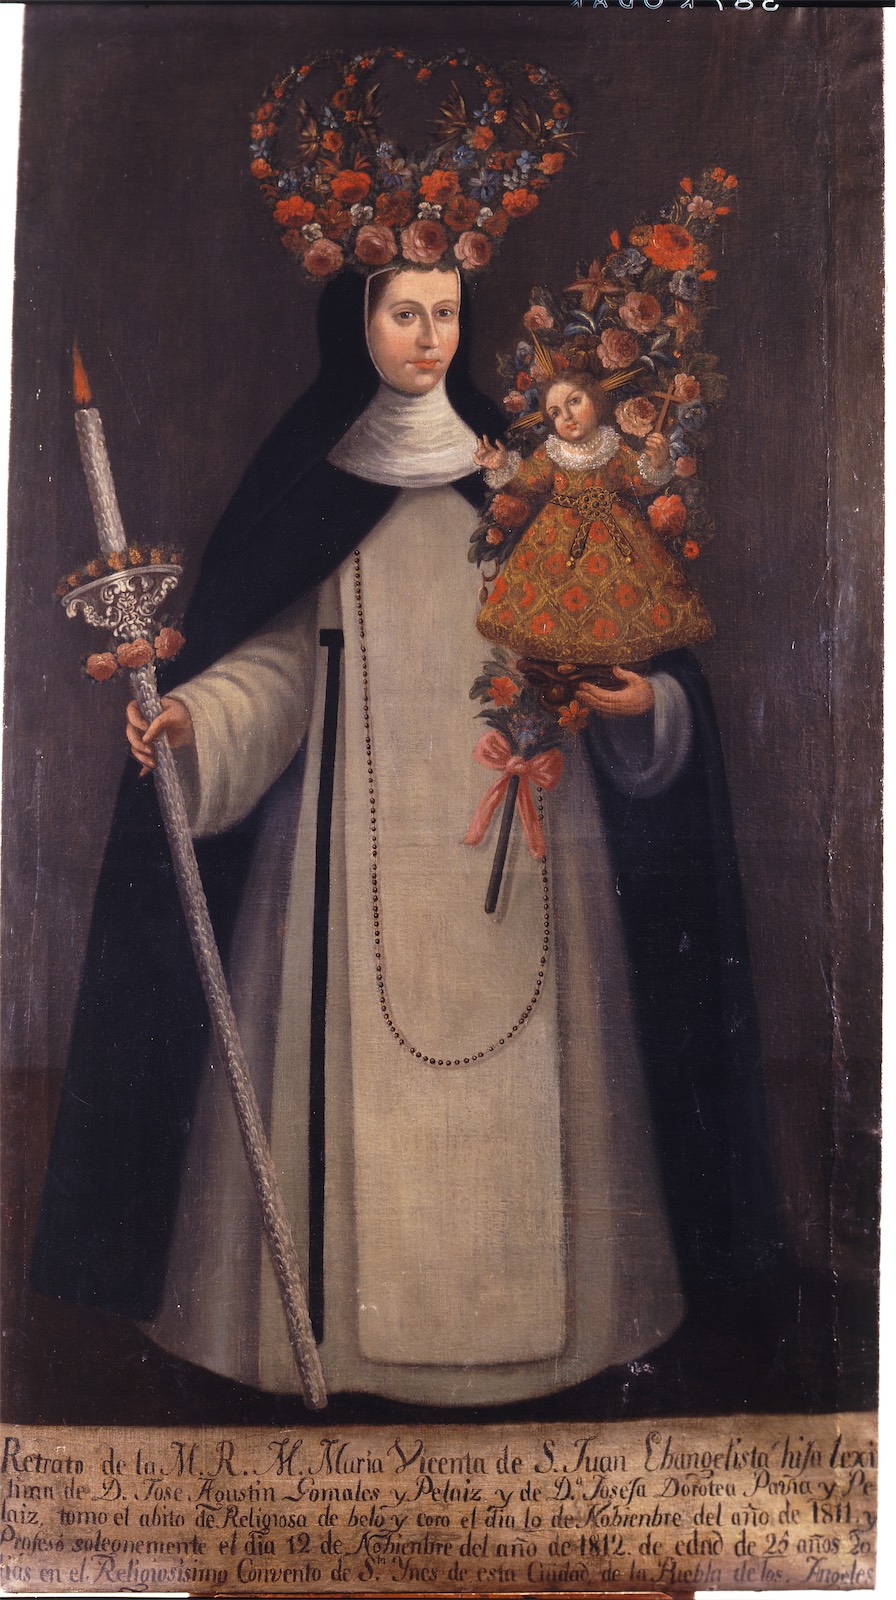 Sor María Vicenta de San Juan Evangelista